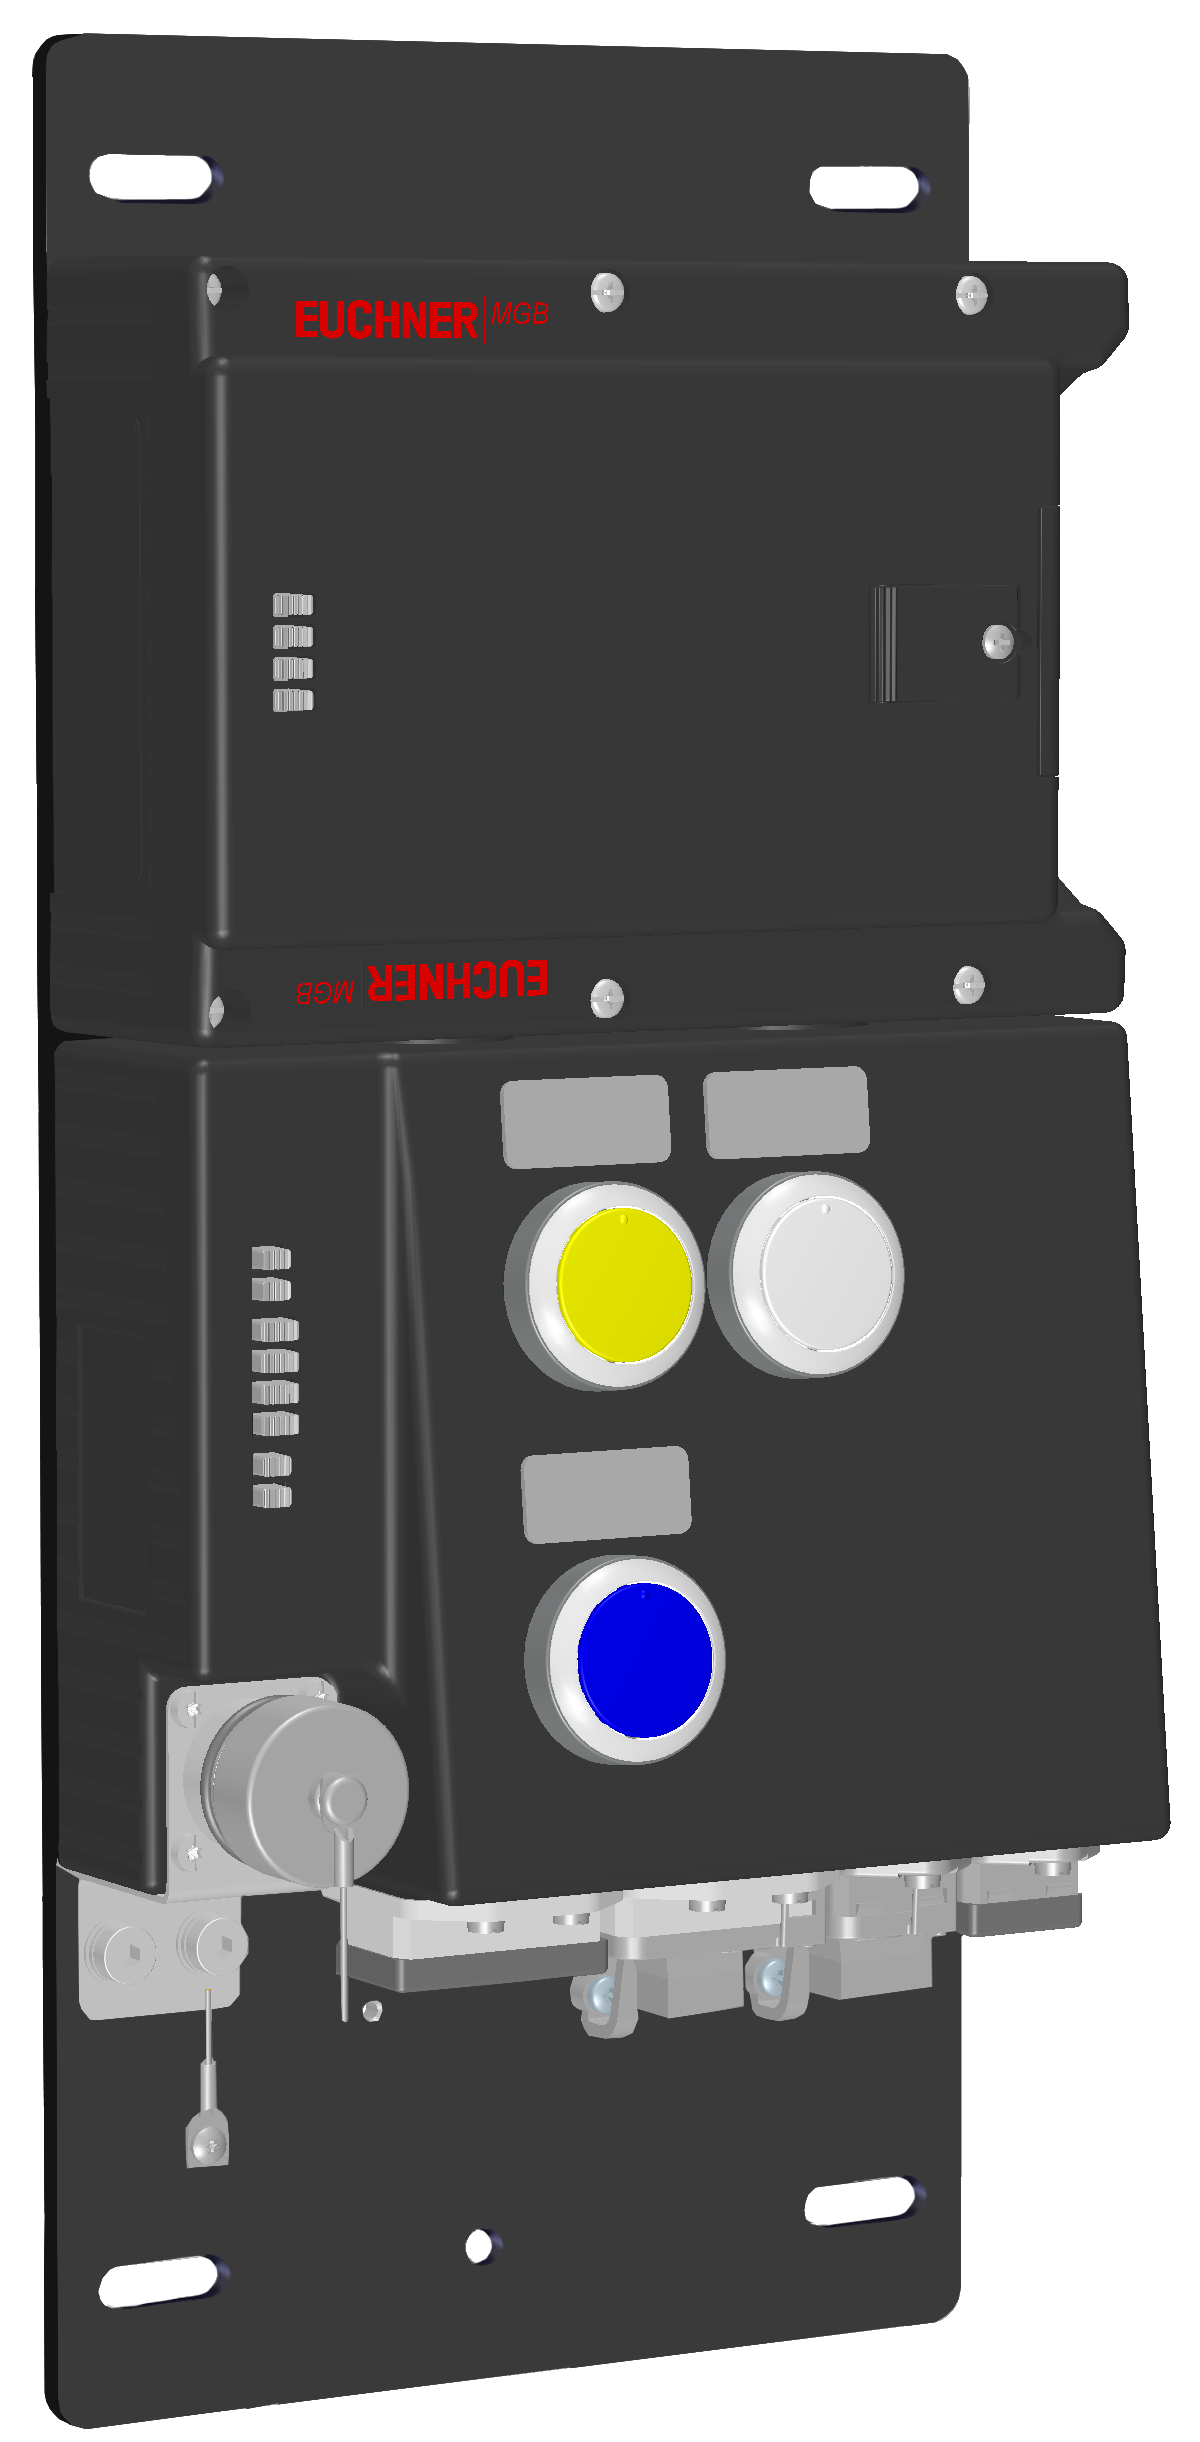 Vyhodnocovací moduly s jištěním ochranného krytu MGB-L2B-PNC-R-115415  (Obj. č. 115415)